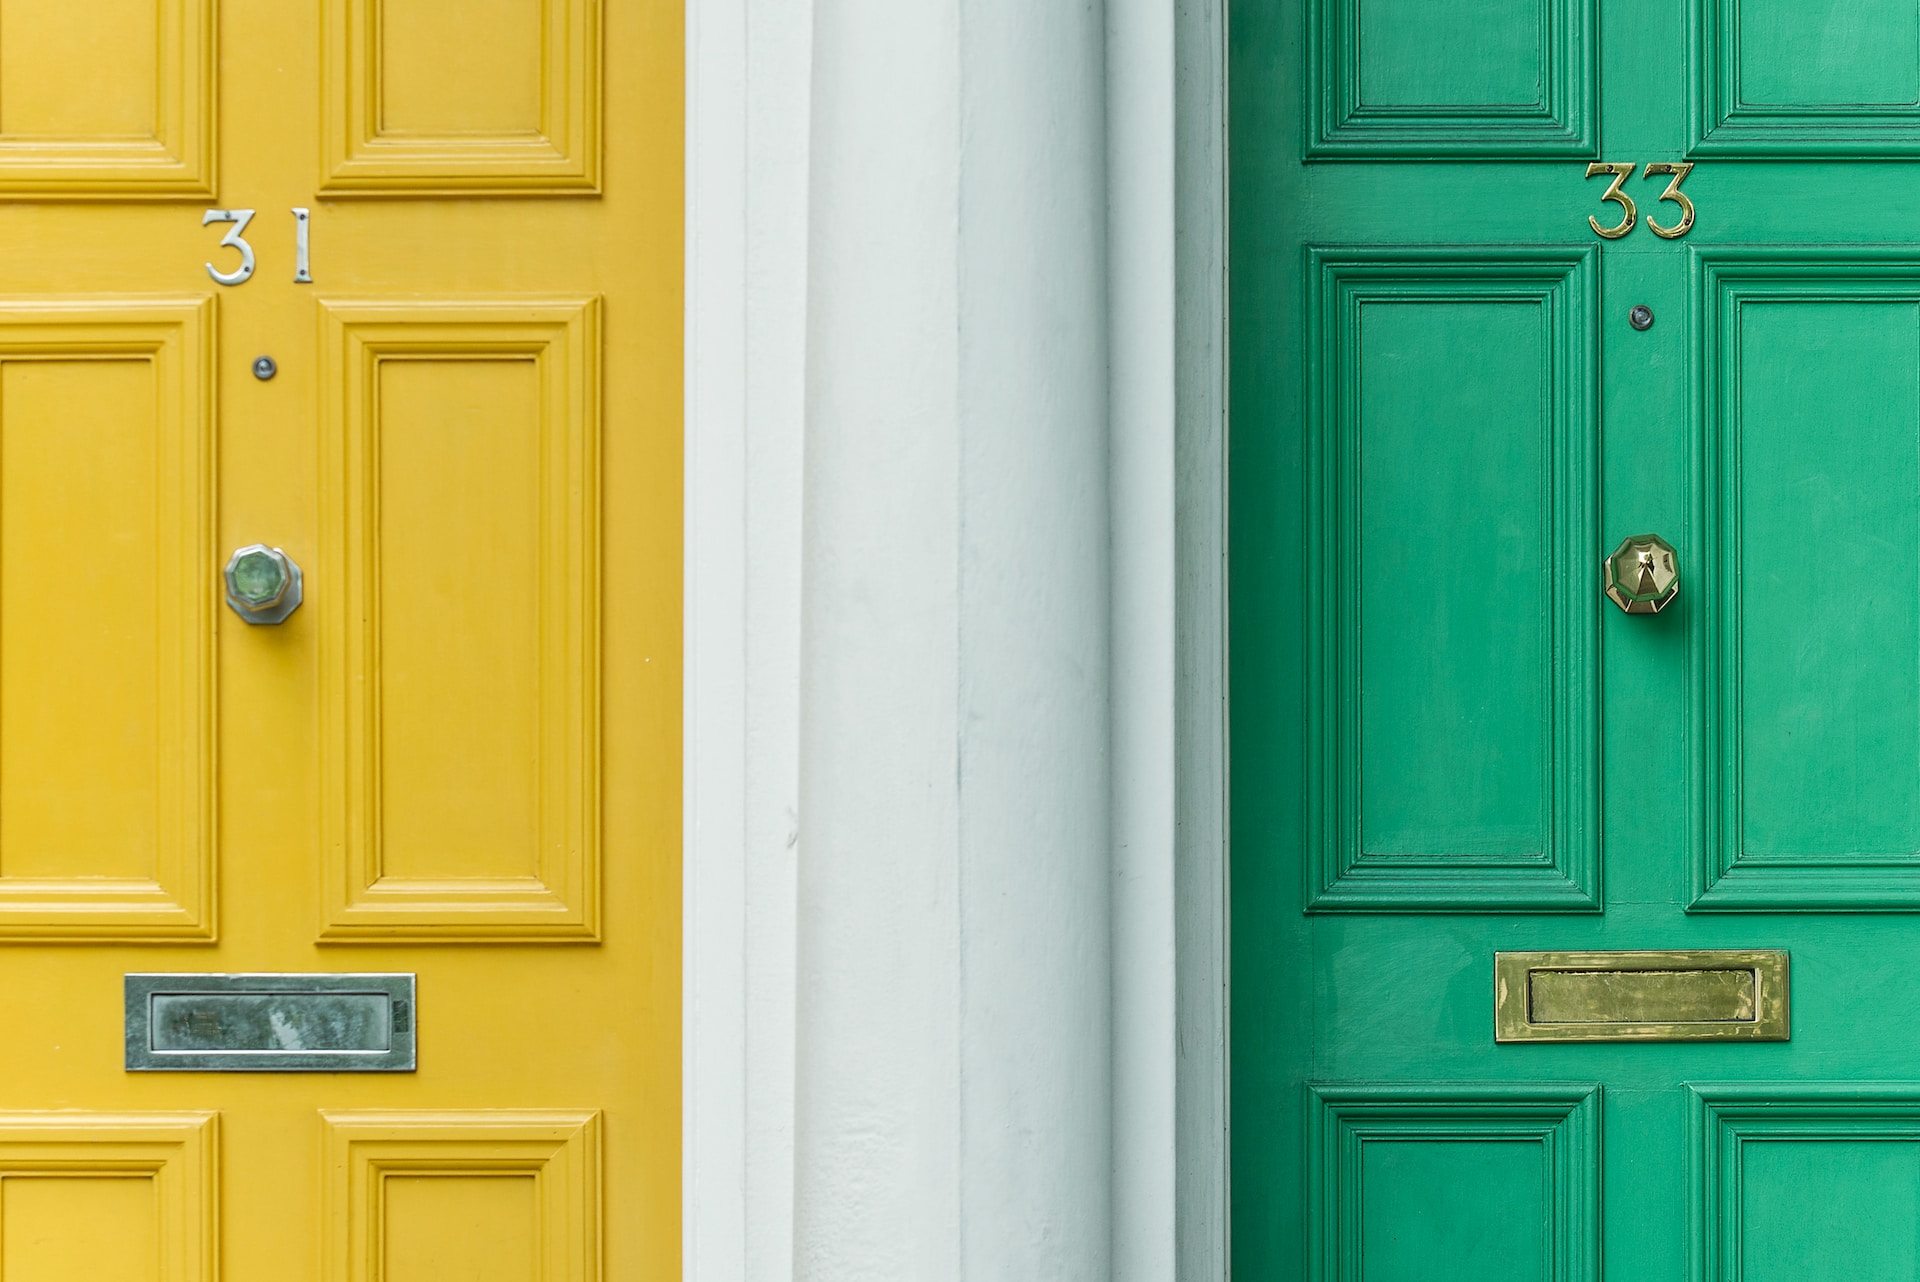 A yellow front door and green front door